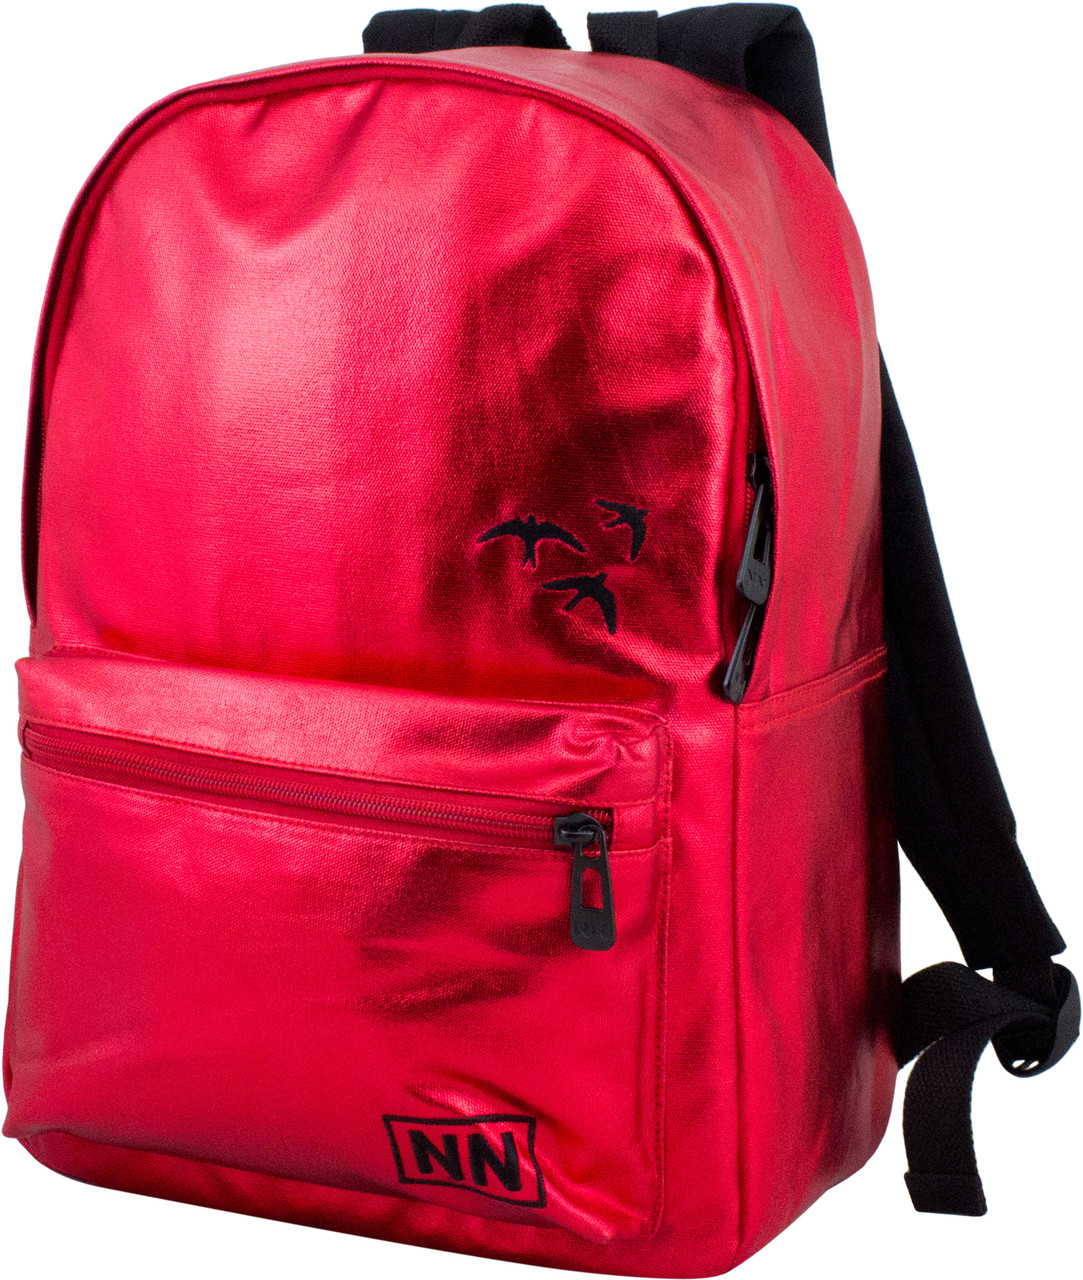 Детский школьный рюкзак Winner One красный  на 15 л